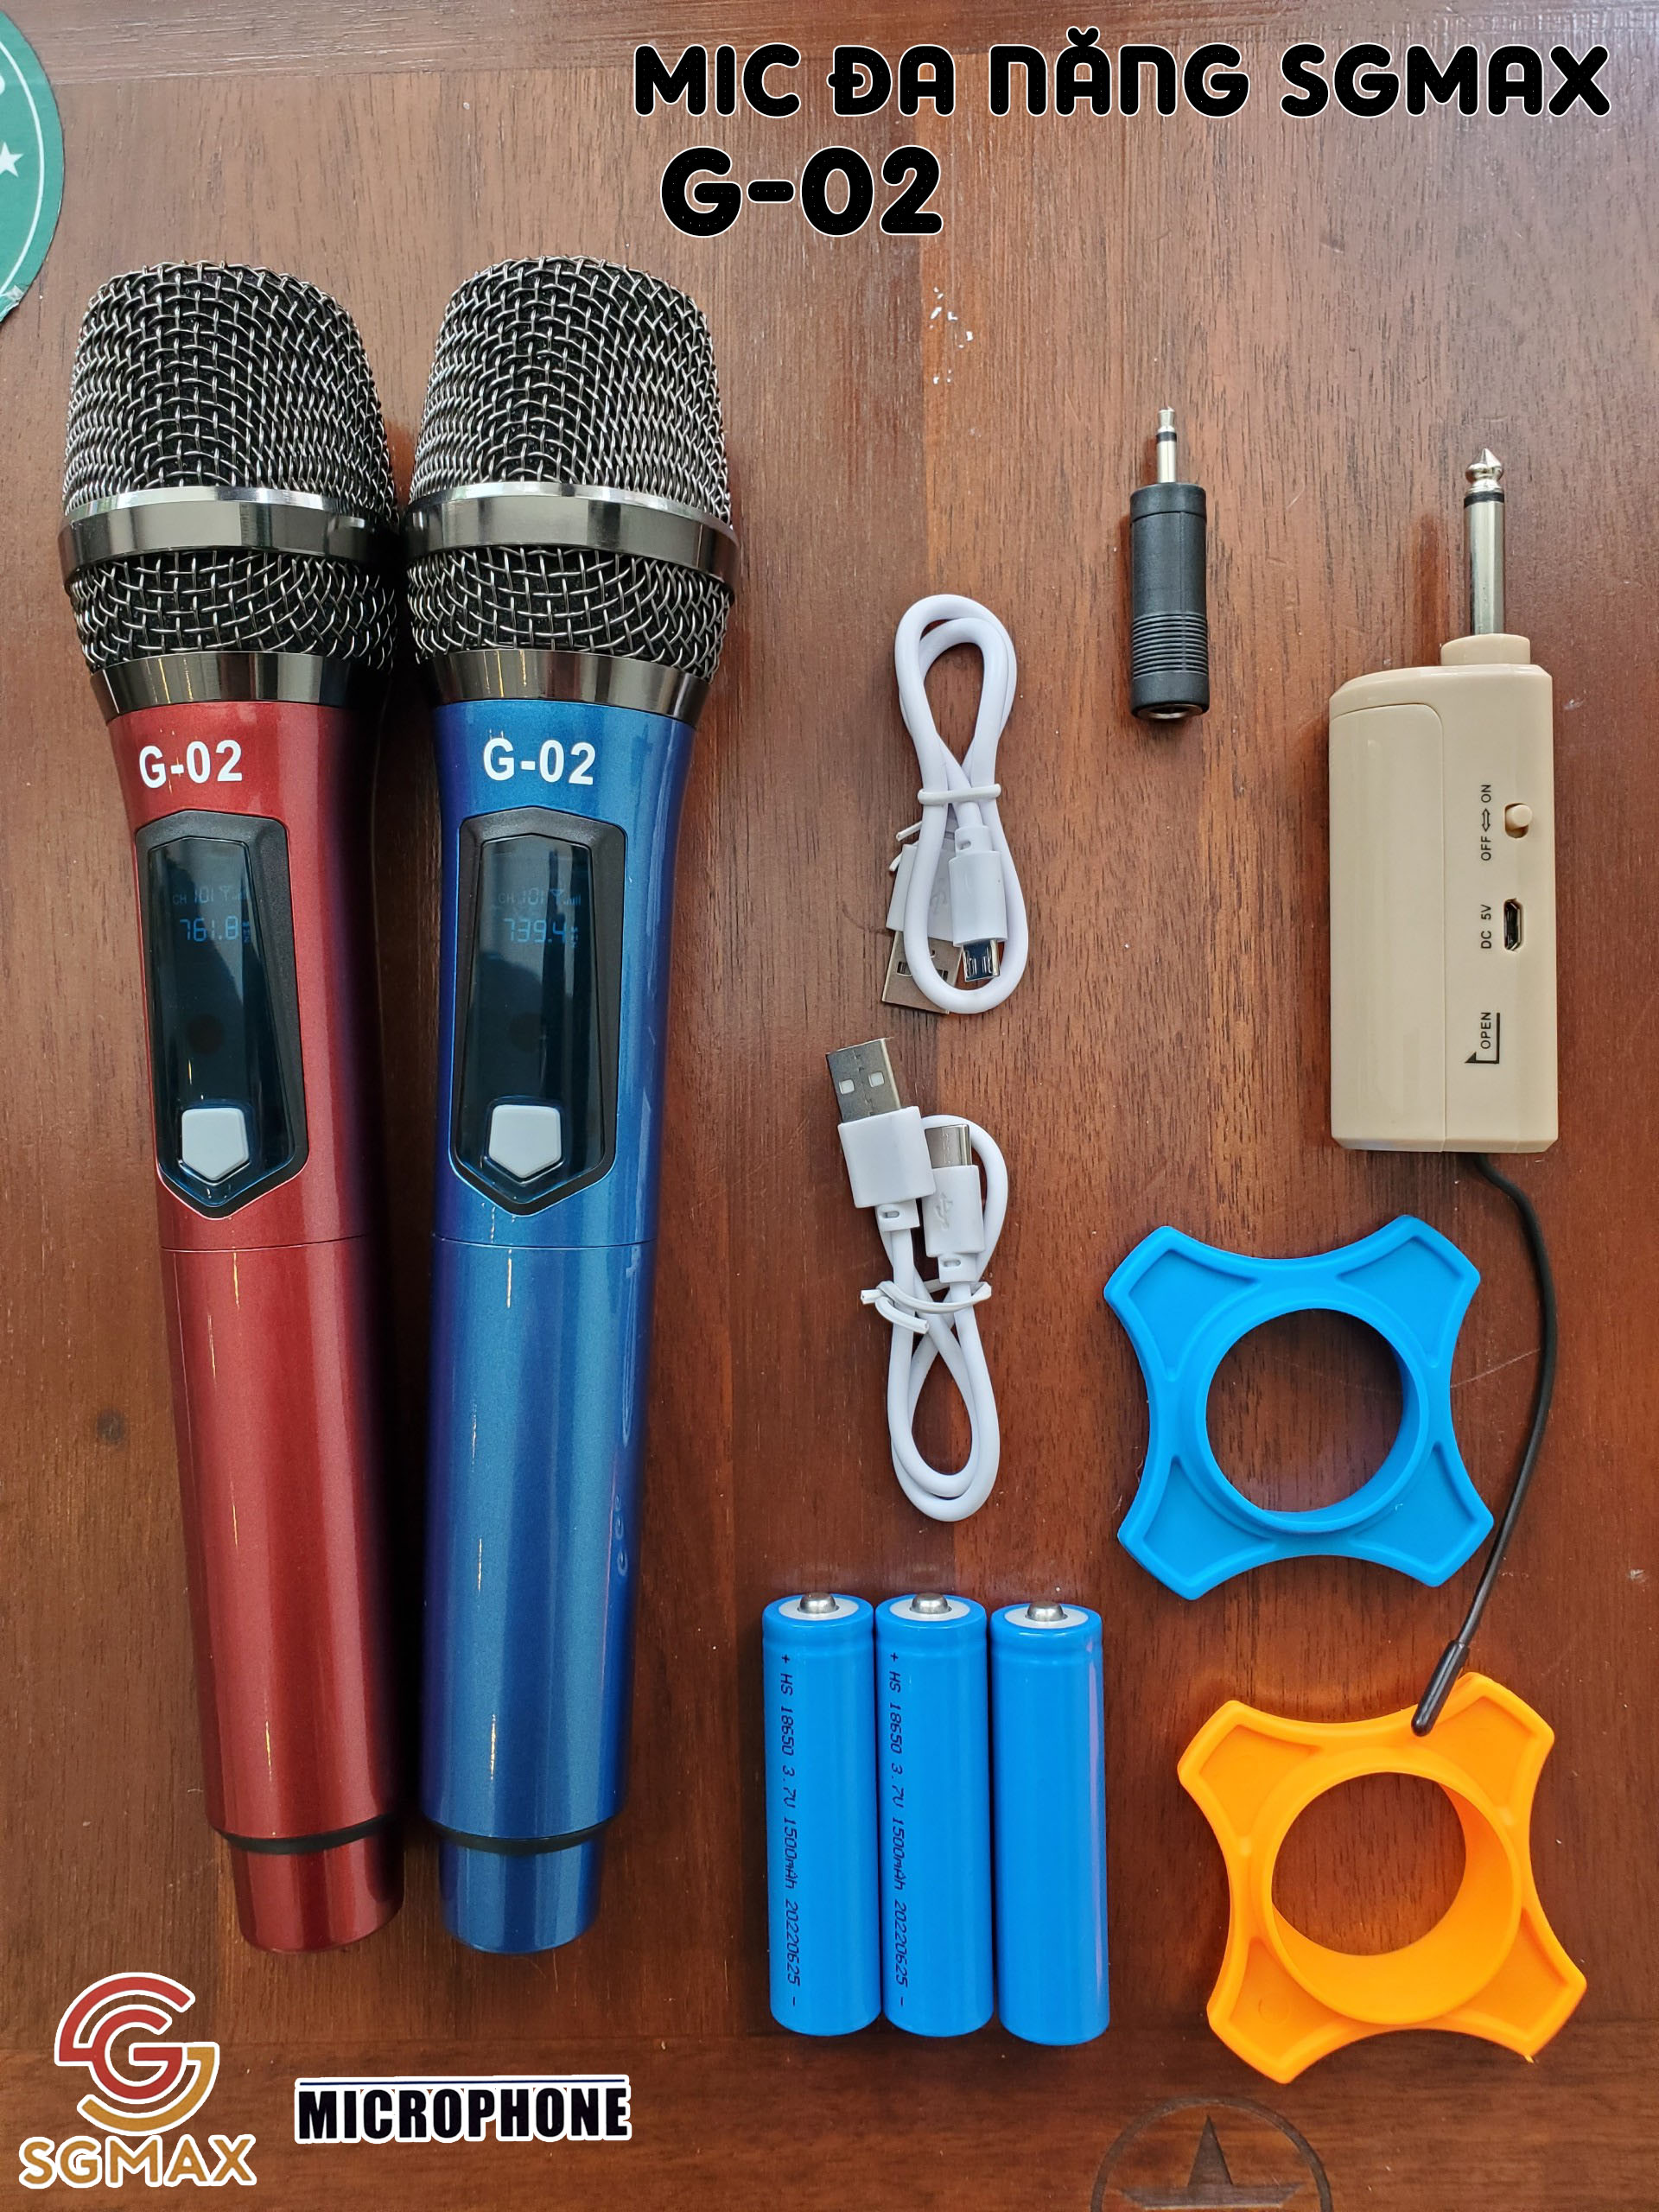 Micro Không Dây Đa Năng SGMAX G02, Mic Karaoke Không Dây Màn Hình Led Hiển Thị, Sử Dụng Cho Các Thiết Bị Âm Thanh Loa Kéo, Loa Bluetooth, Amply, Dàn Karaoke Gia Đình